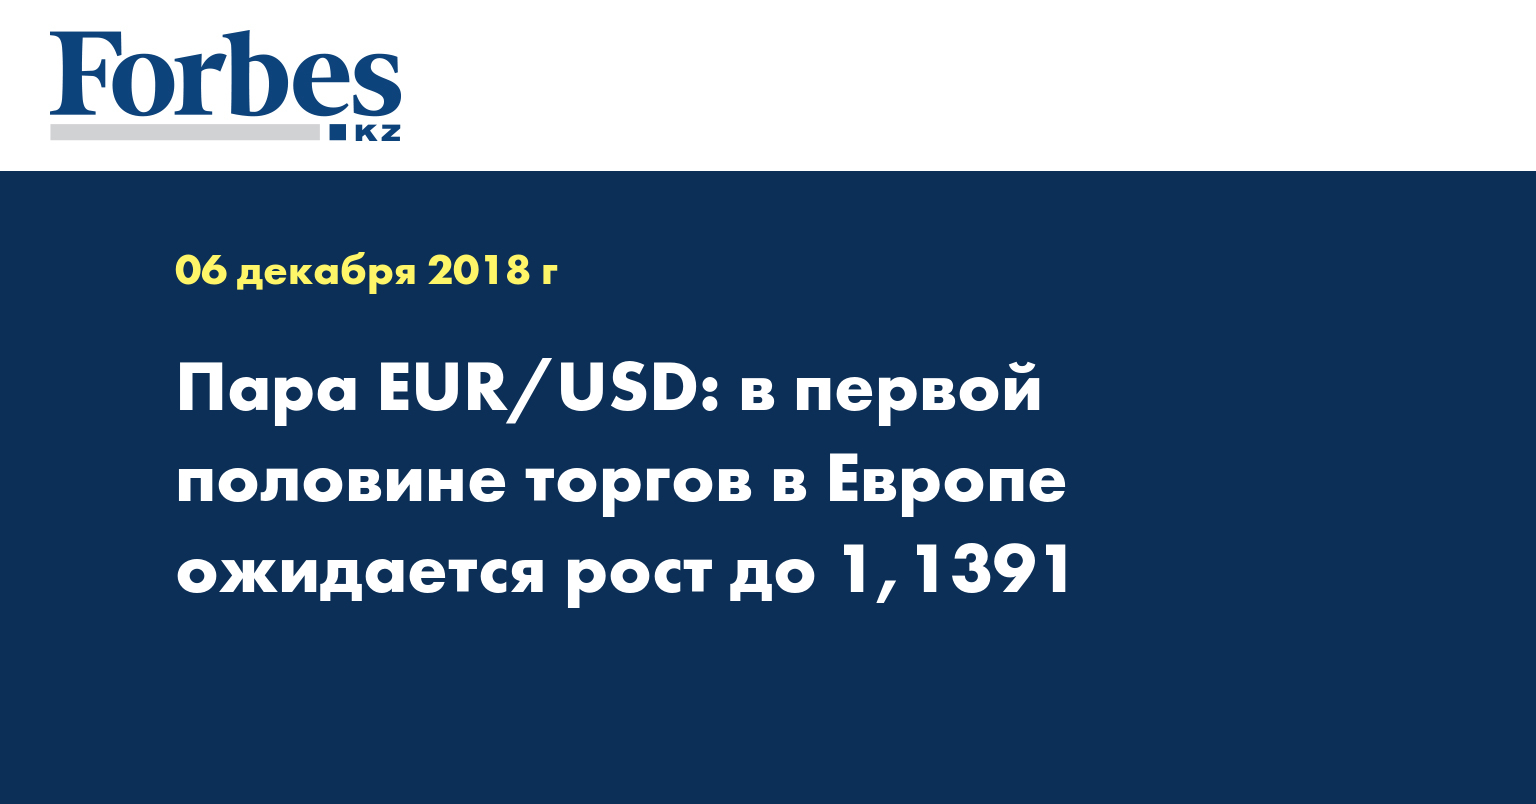 Пара EUR/USD: в первой половине торгов в Европе ожидается рост до 1,1391